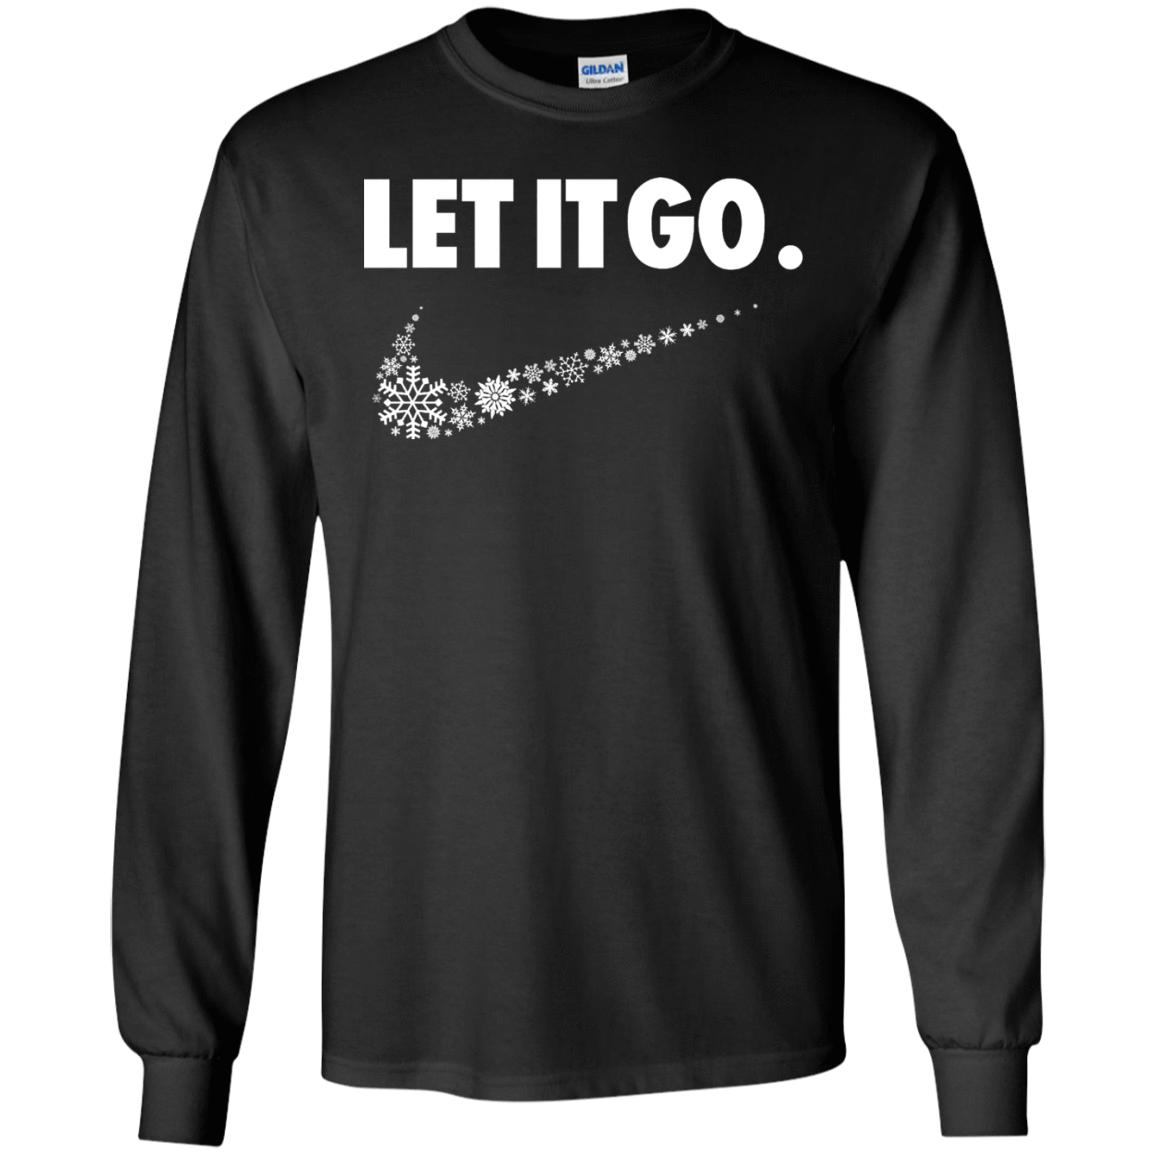 T-Shirts Black / S Let It Go Men's Long Sleeve T-Shirt